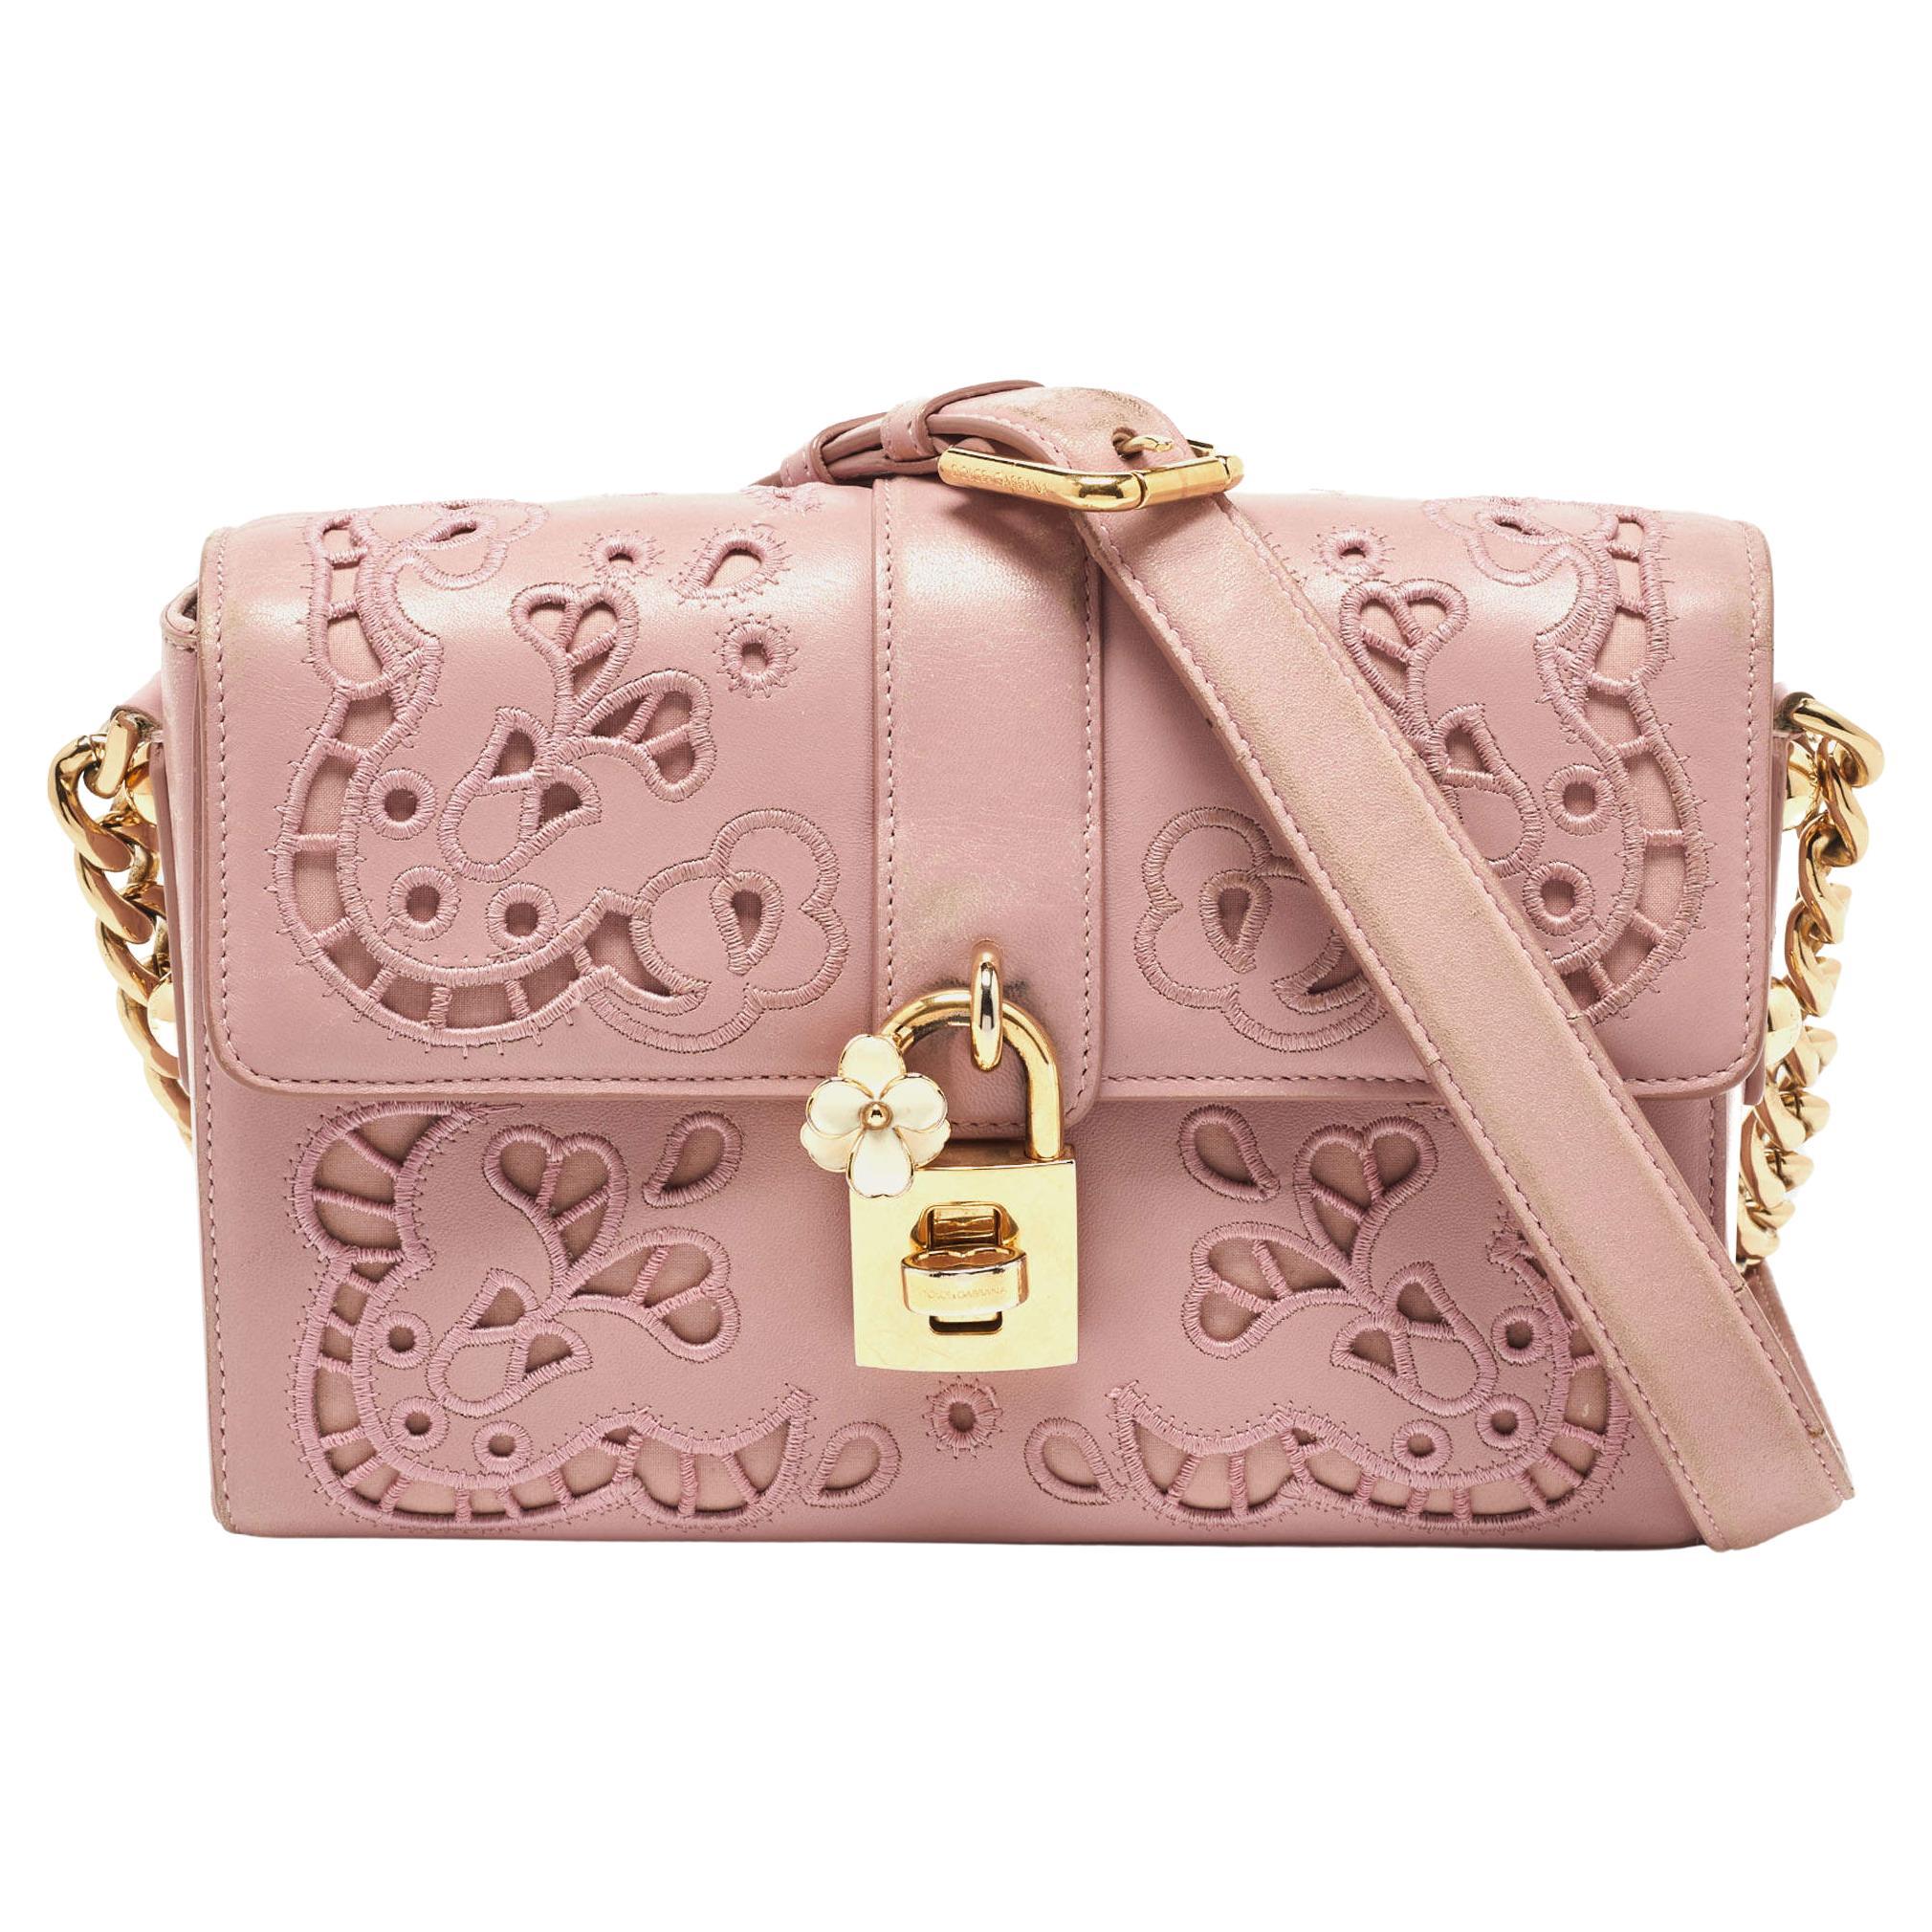 Dolce & Gabbana Pink Leather Embroidered Dolce Shoulder Bag